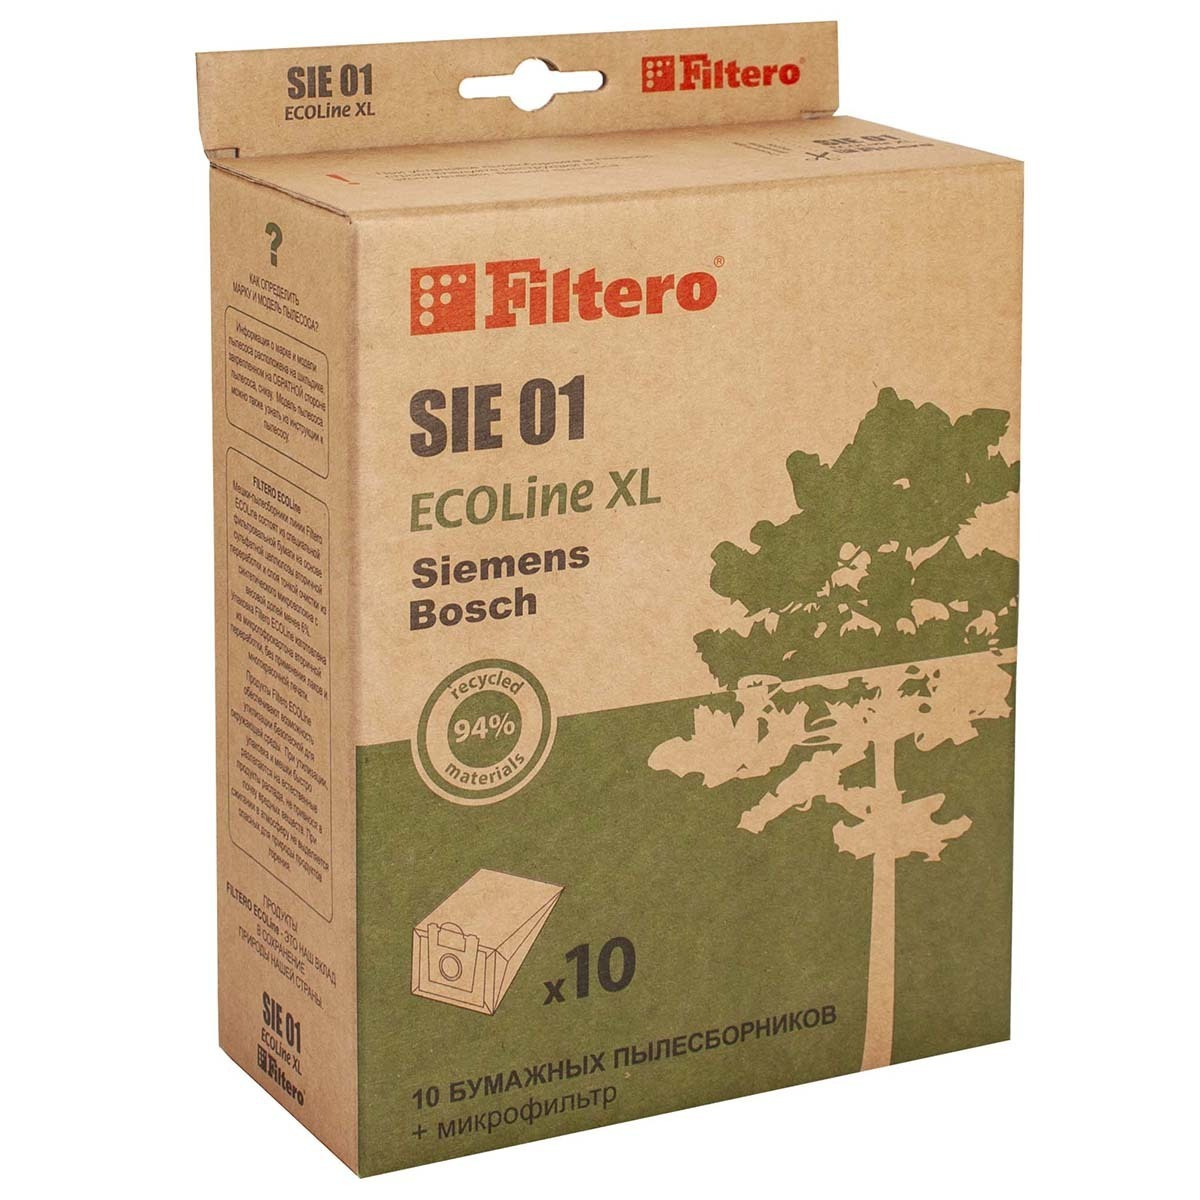 Мешки-пылесборники Filtero SIE 01 ECOLine XL (тип "G"), для Bosch, Siemens, бумажные, 10 шт + фильтр #1